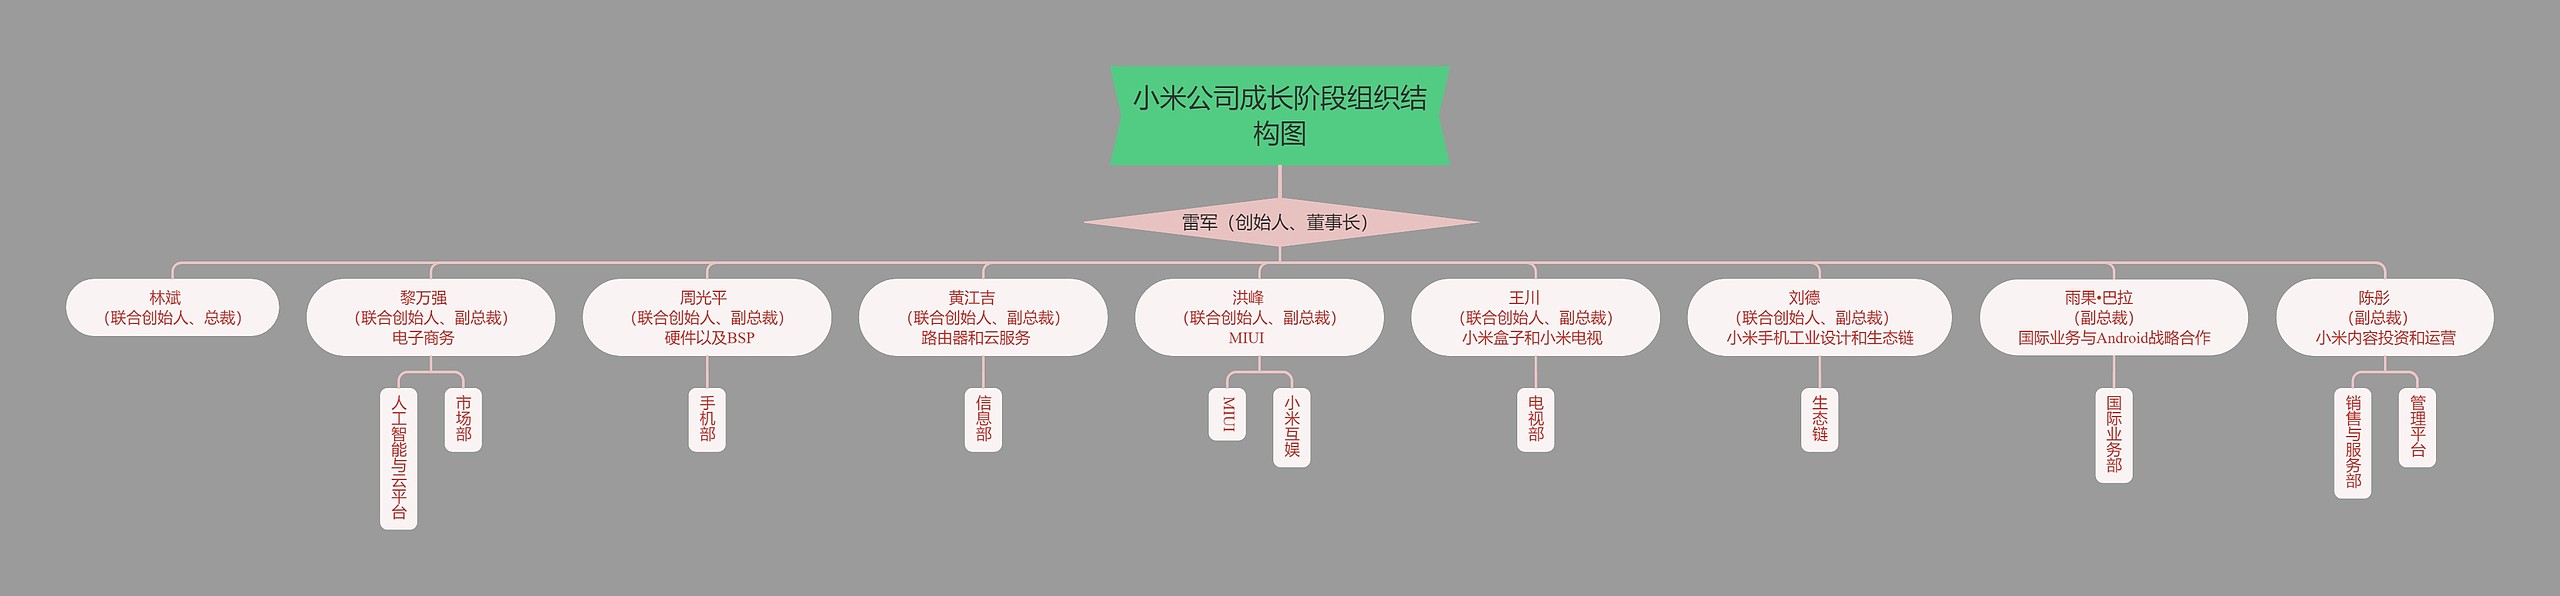 小米公司成长阶段组织结构图